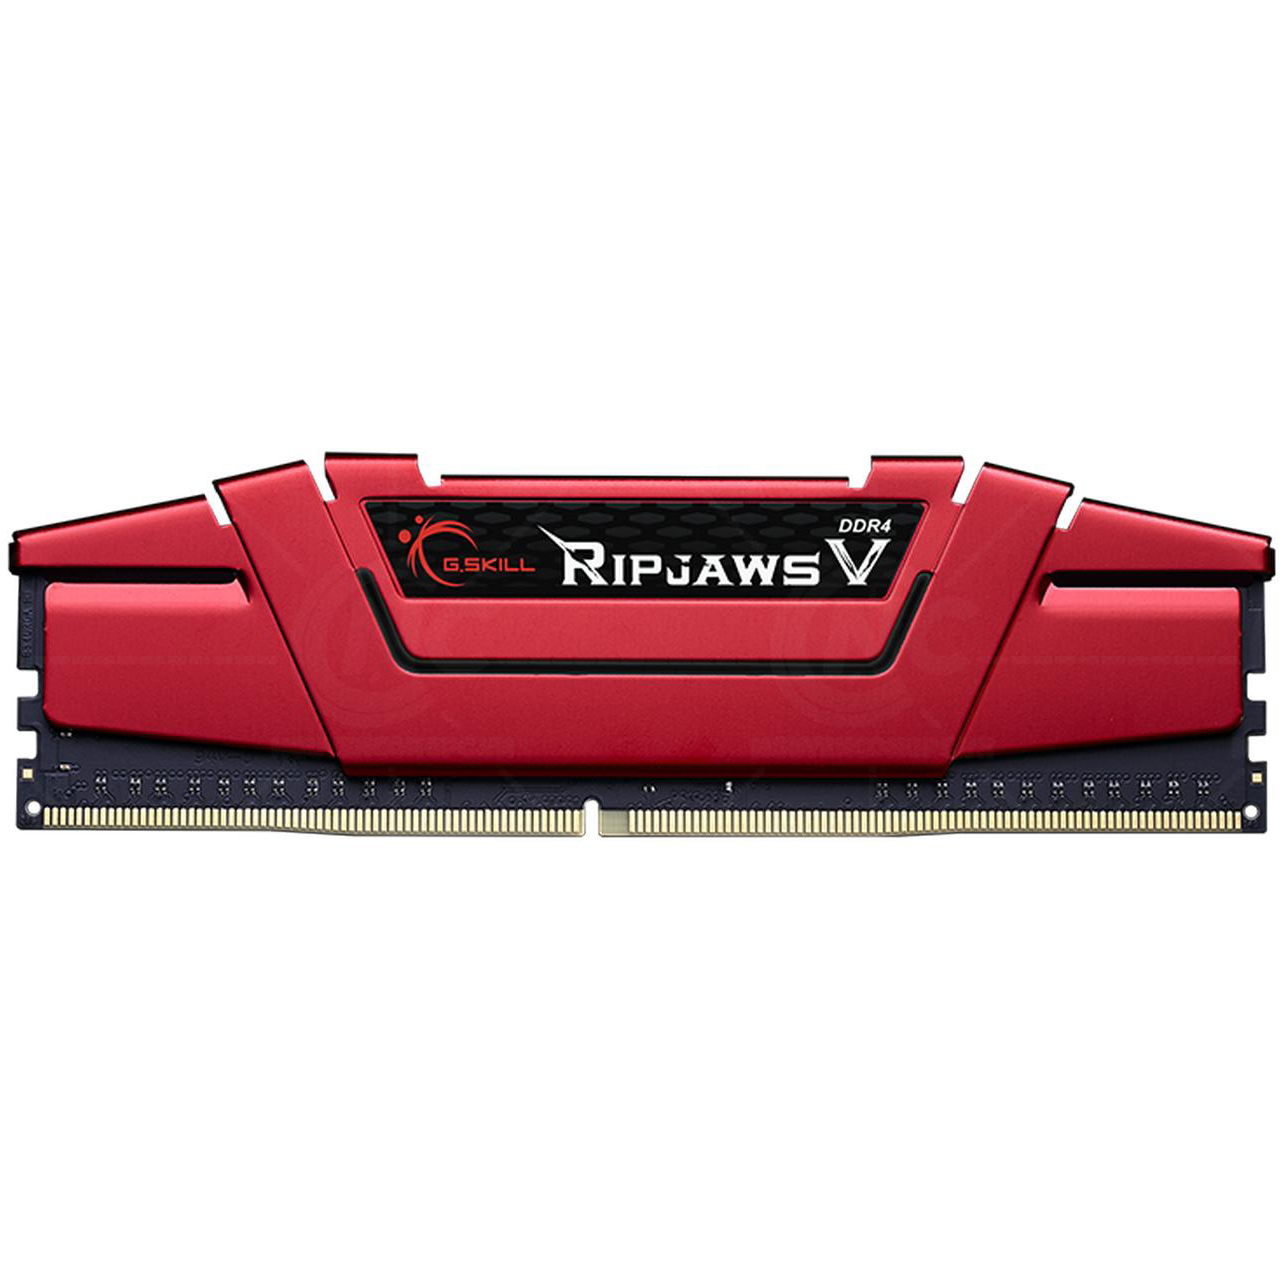 DDR4 PC 16G/3200 GSKILL RIPJAWS V F4-3200C16S-16GVR Red Tản nhiệt thép New Chính hãng (Box)